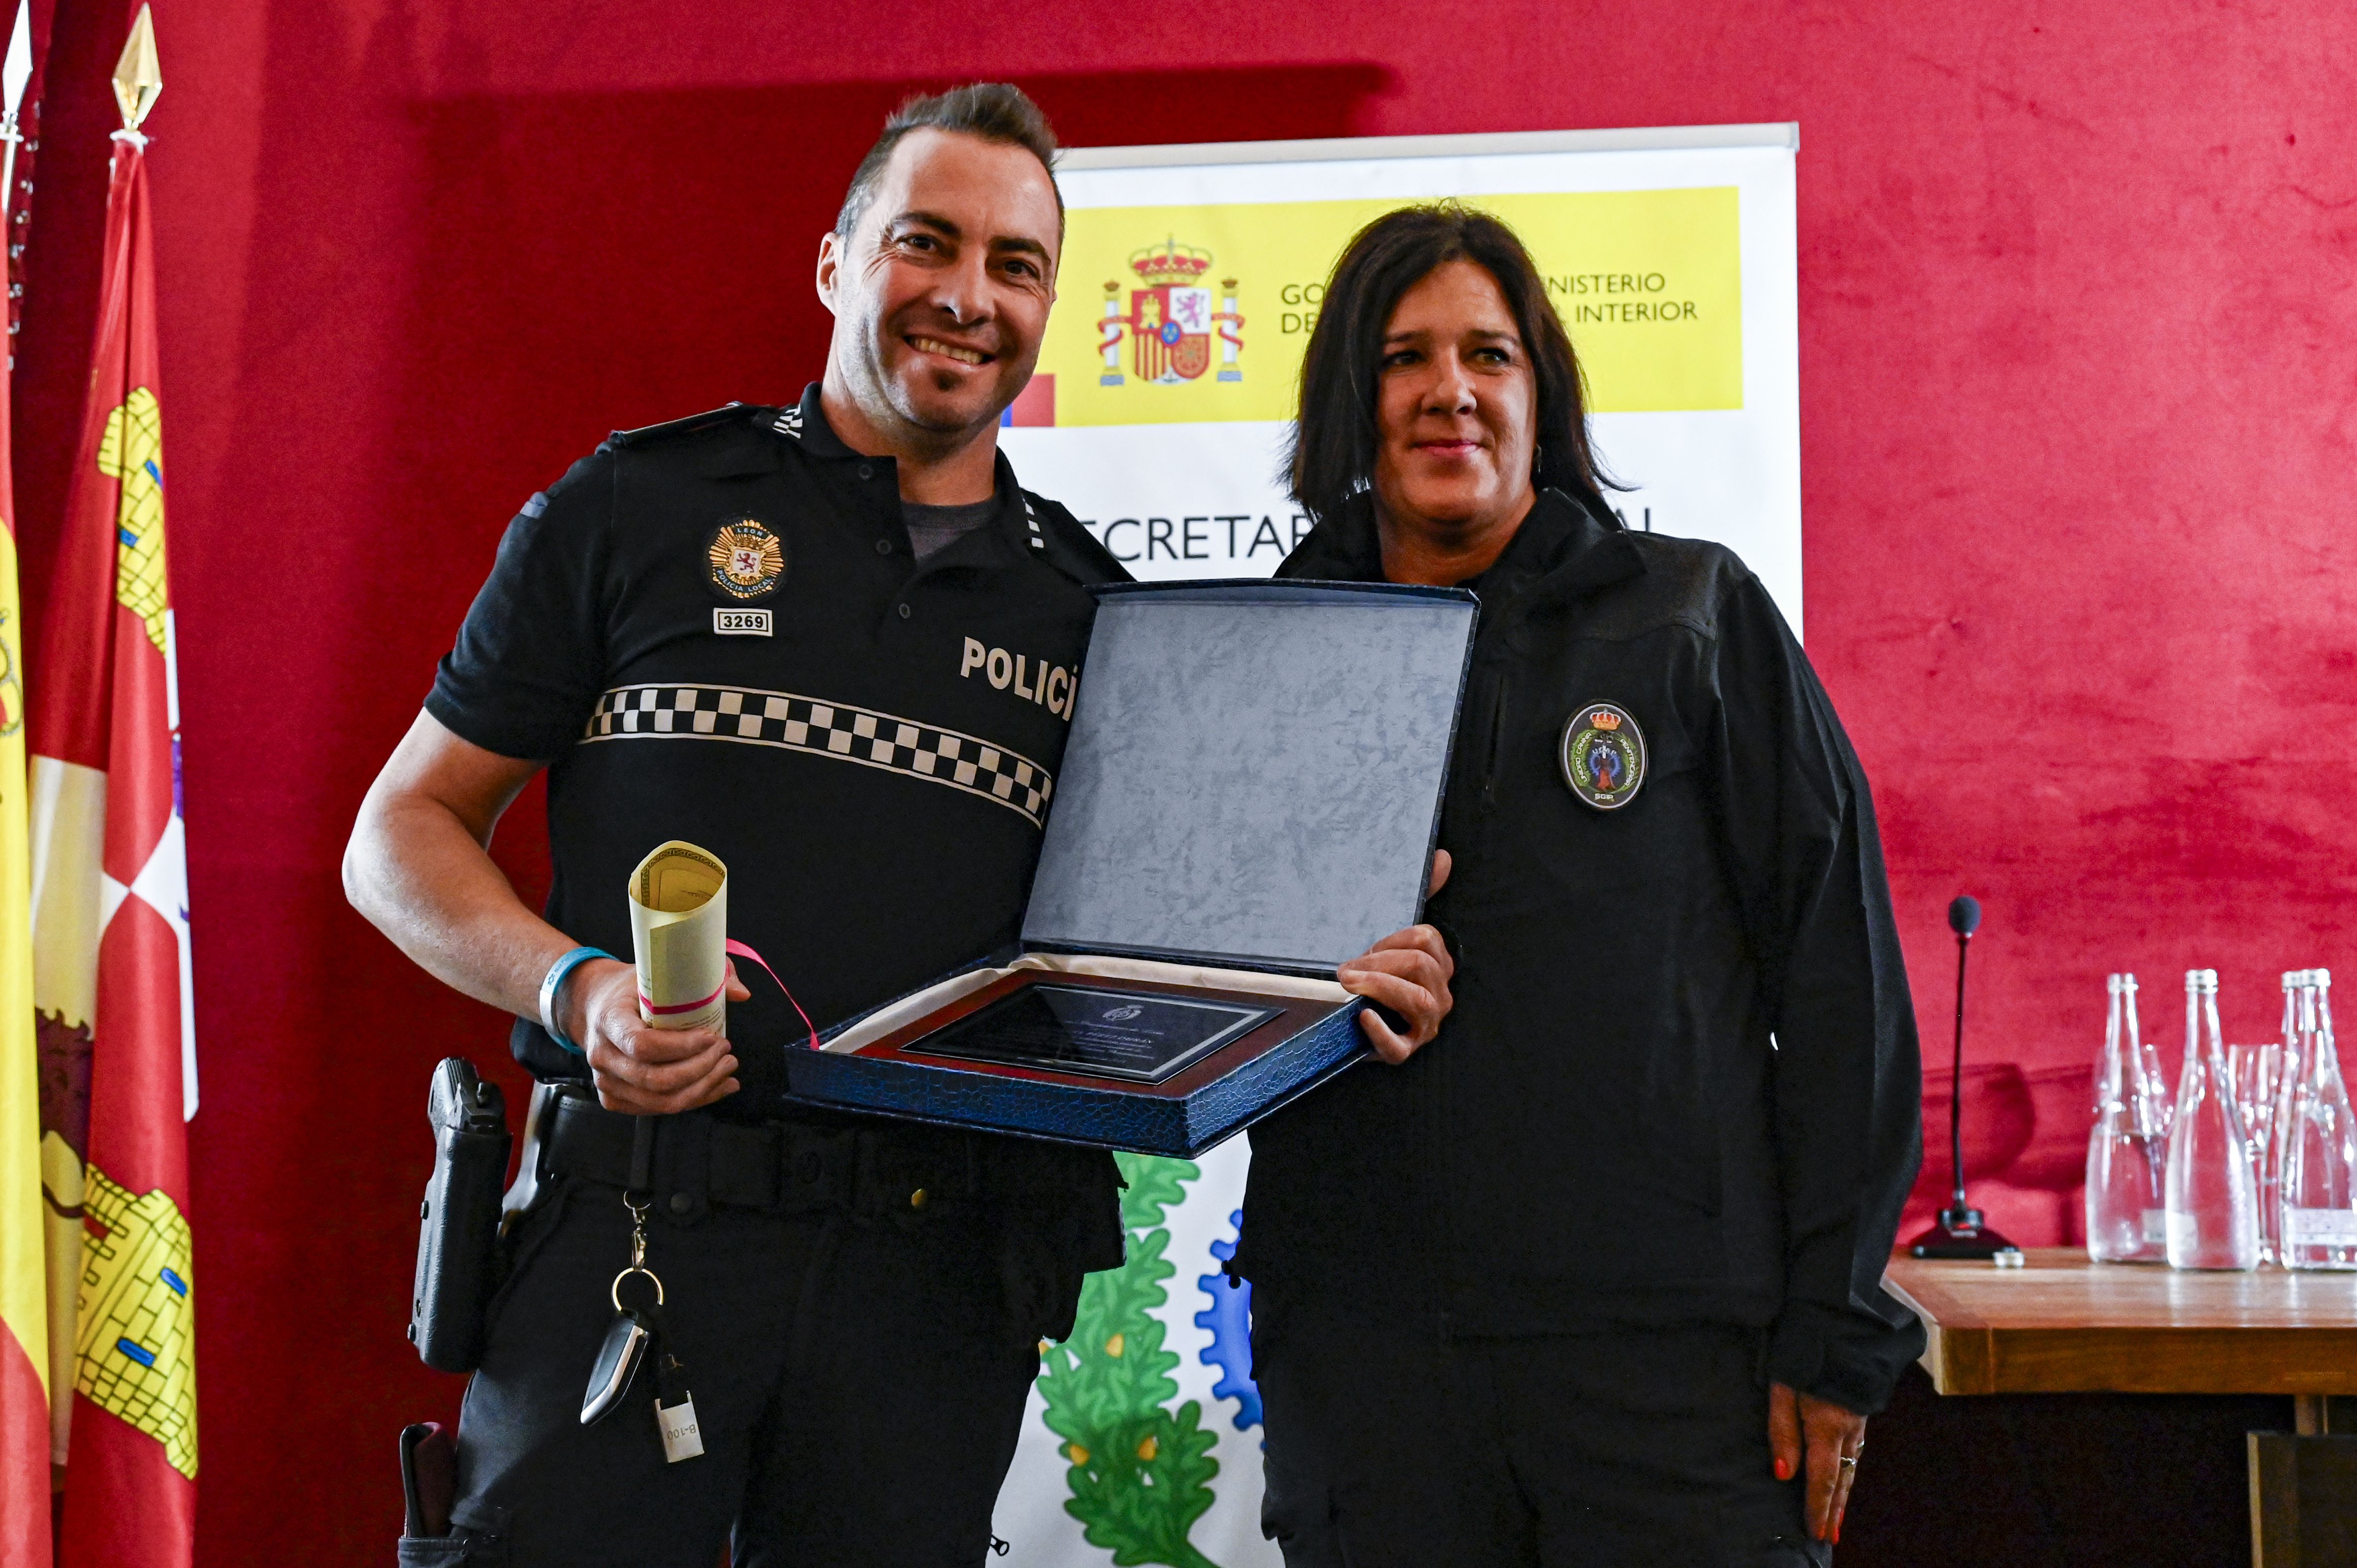 El agente de la unidad canina de la Policía Local, José Ángel Pérez, recibe su condecoración por el trabajo en Villahierro. | SAÚL ARÉN